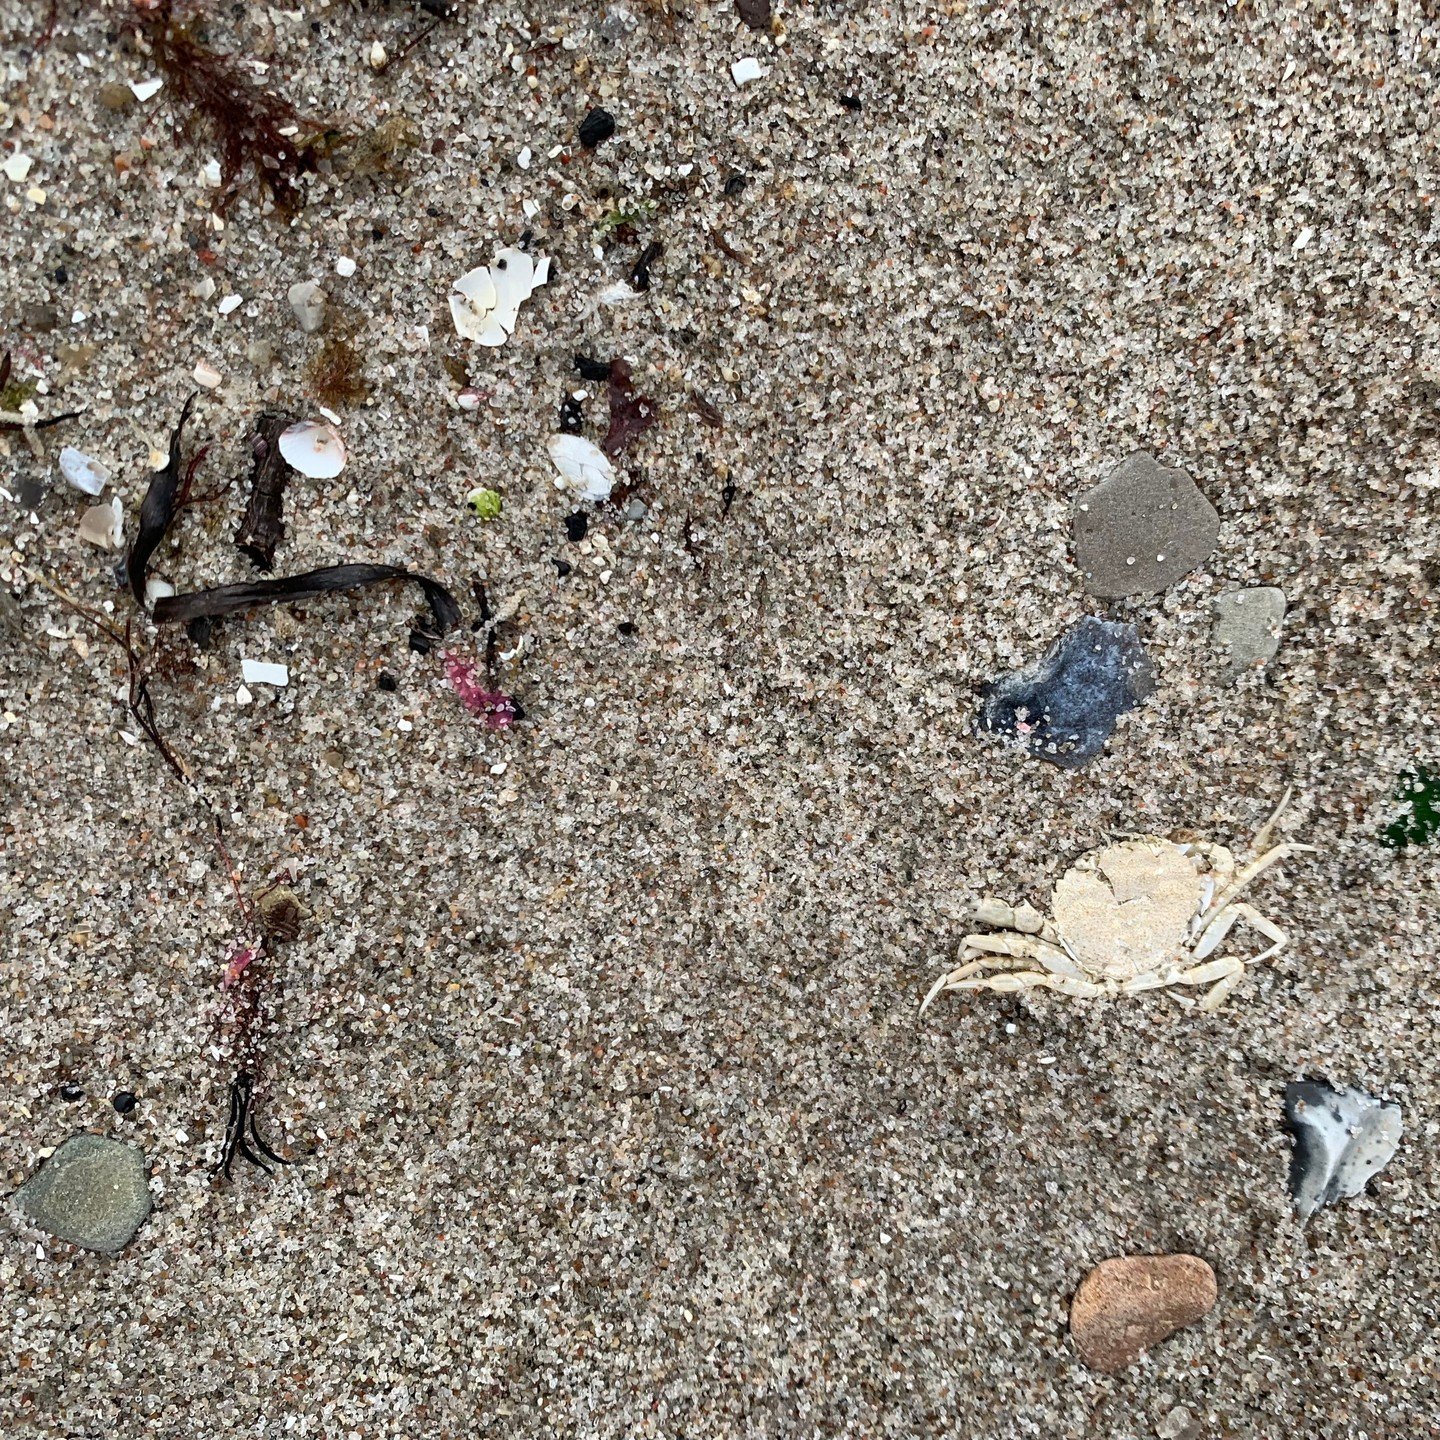 Helt fladmast. Der l&aring; krabben i sandet.

(Den skarpe havbiolog kan m&aring;ske afg&oslash;re, om det snarere er skallen, som en krabbe er vokset ud af).

Uanset hvad, er pointen den samme. Nogle dage er det bare for meget. Vi f&oslash;ler os ma